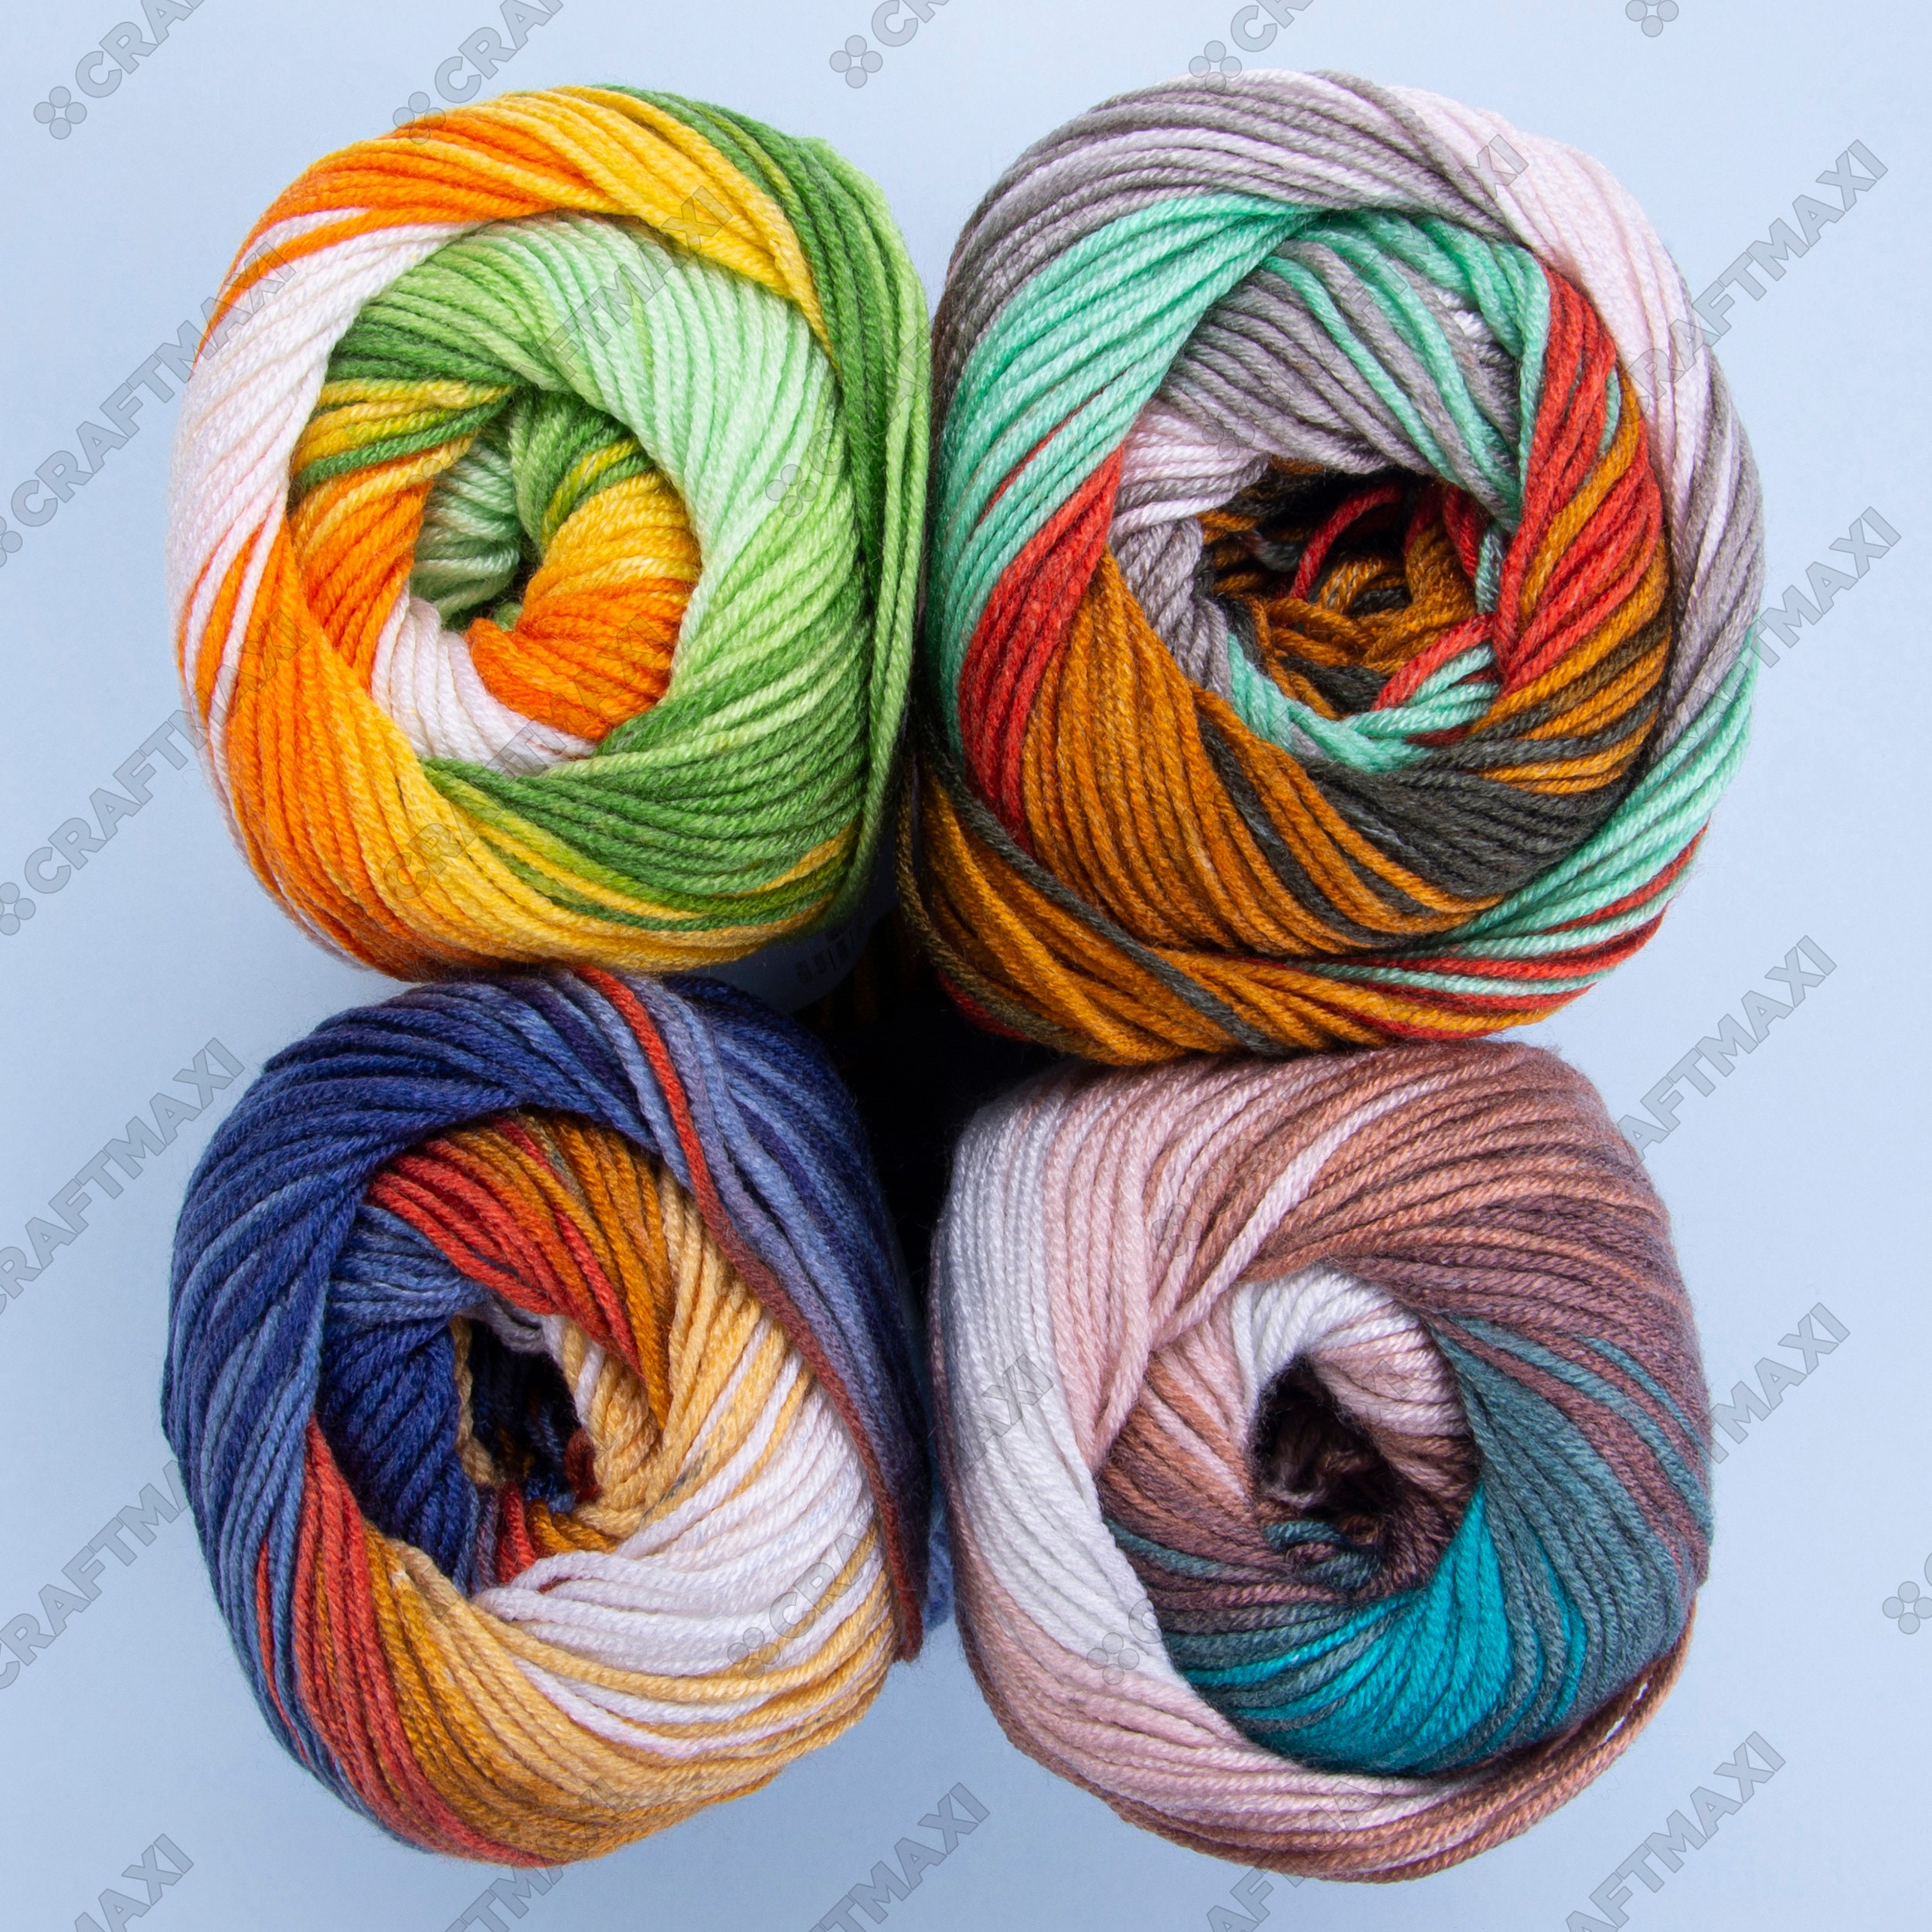 YARNART ADORE DREAM Anti-pilling Knitting Yarn, Baby Yarn, Knitting,  Crocheting, 100% Anti-pilling Acrylic, Soft Yarn, 3.52 Oz, 306.21 Yds 